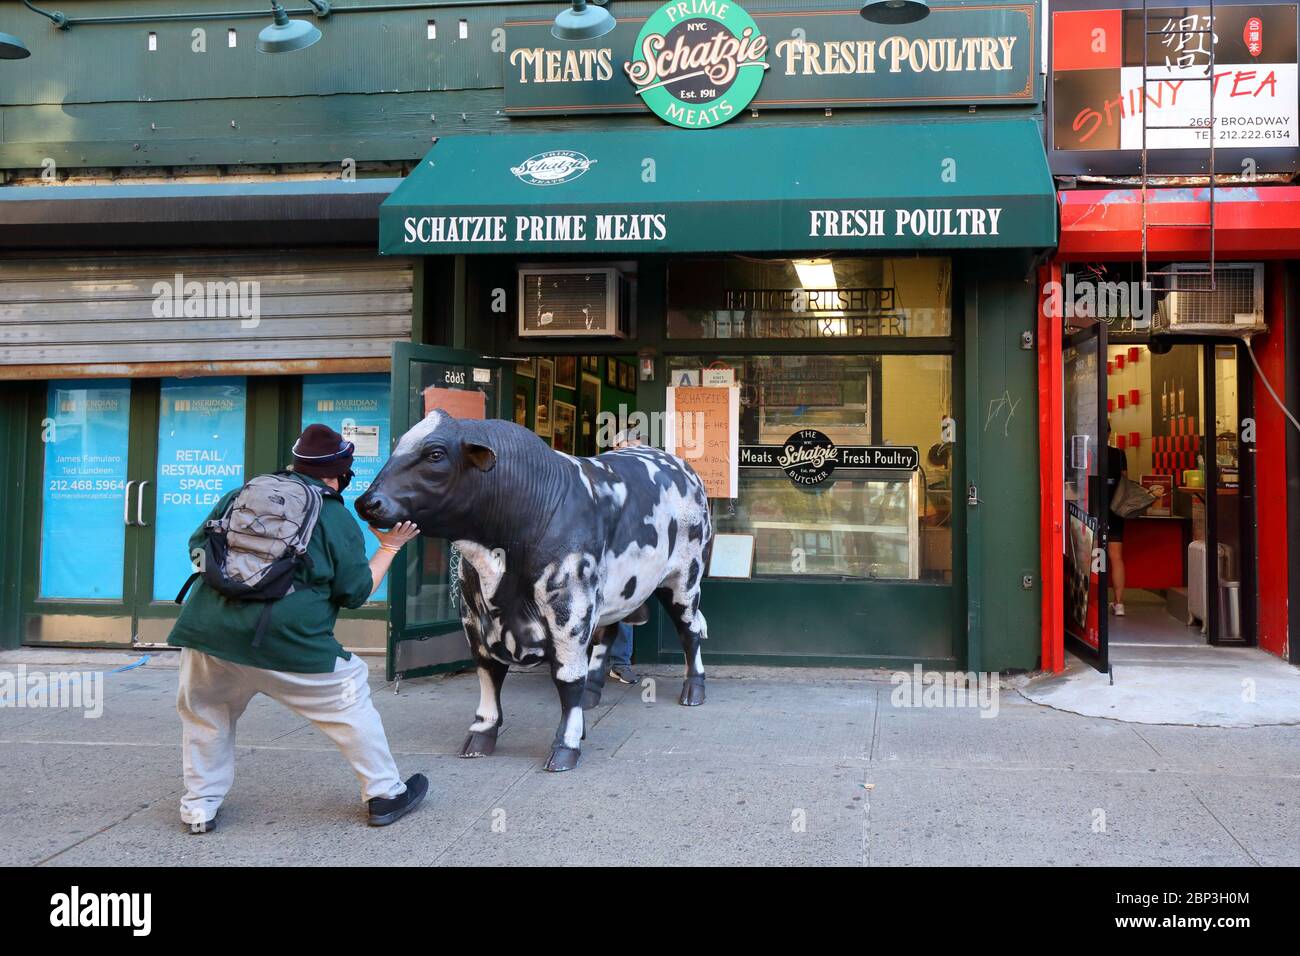 Une personne se langle dans un prop-steer de retour dans Schatzie Prime Meats, 2665 Broadway dans le Upper West Side de Manhattan, New York. Banque D'Images